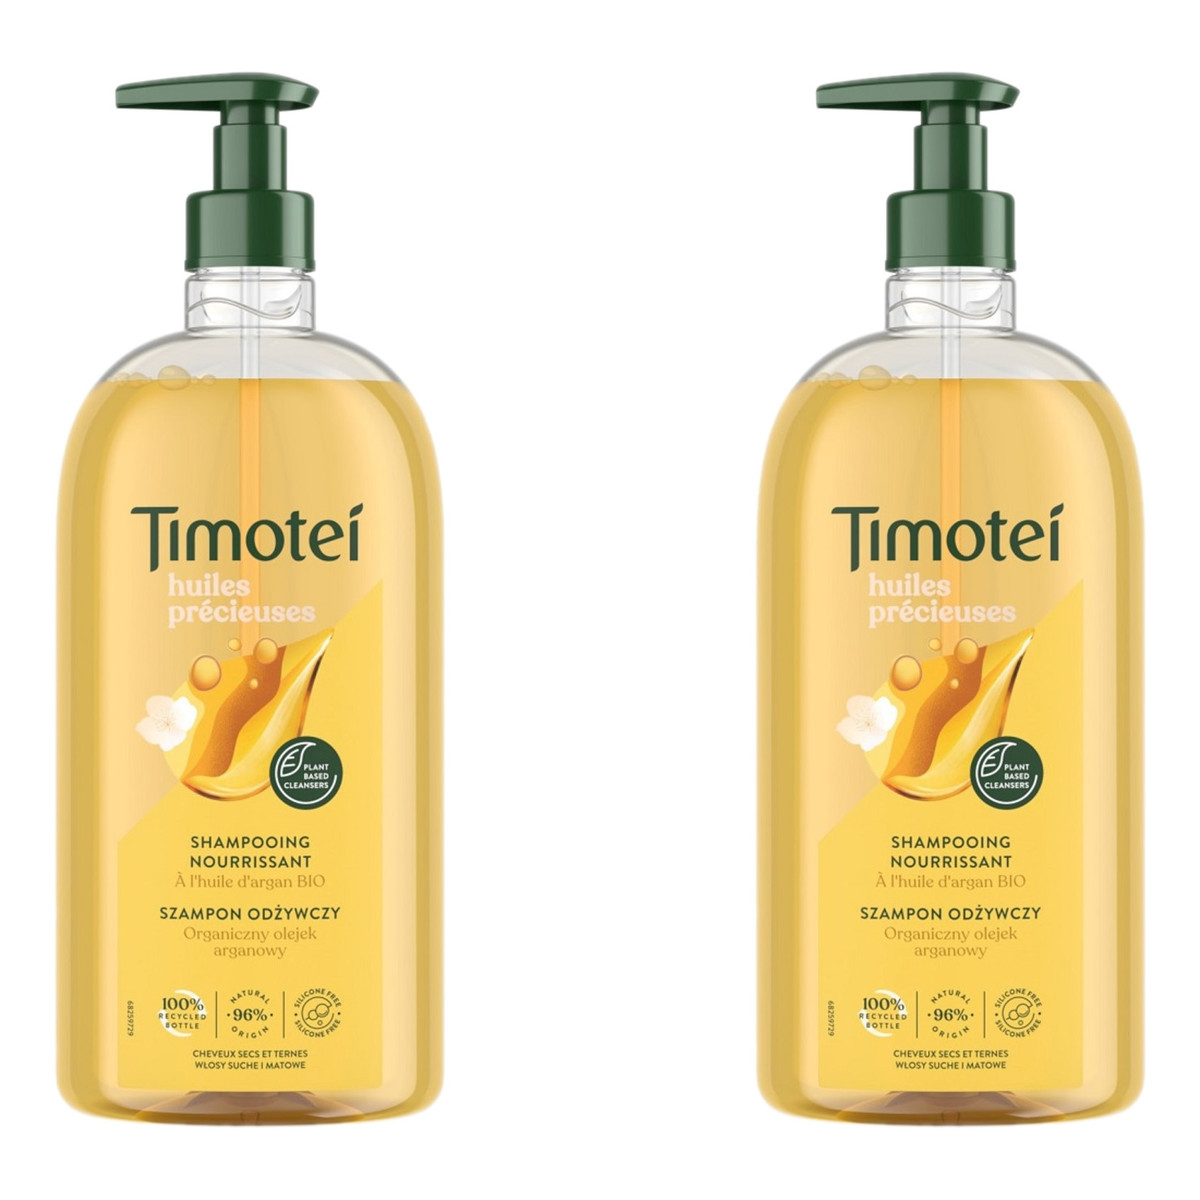 Timotei Precious oils Szampon odżywczy do włosów suchych i matowych z organicznym olejkiem arganowym 2x 750ml